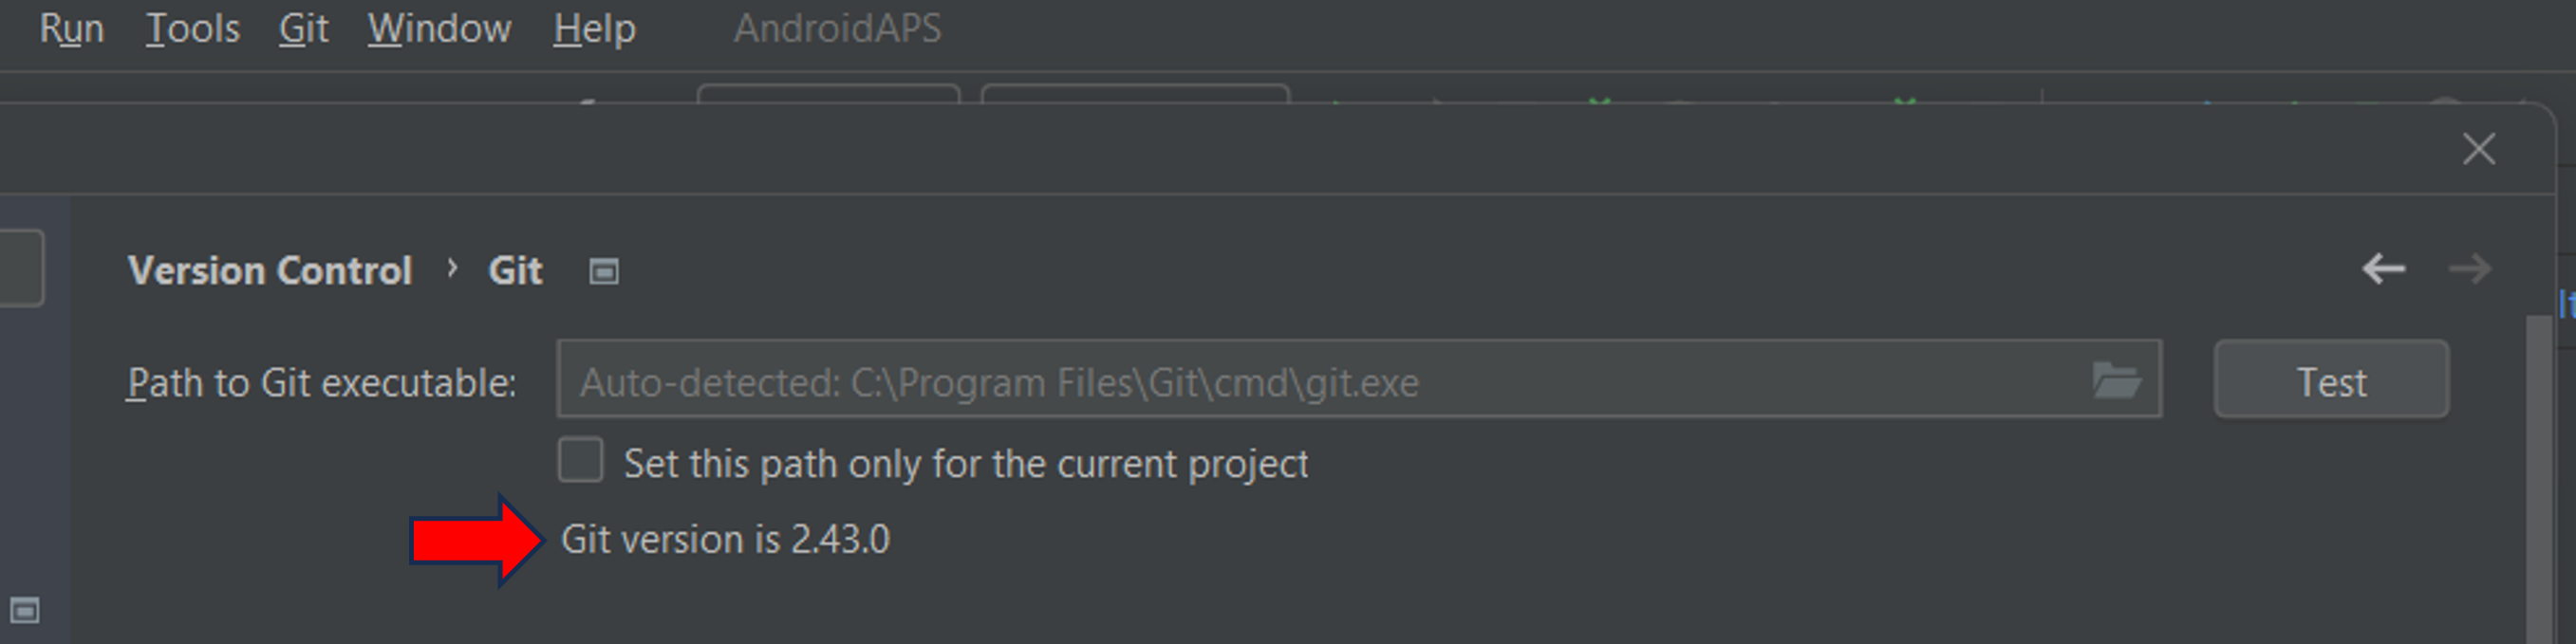 Git_version_displayed